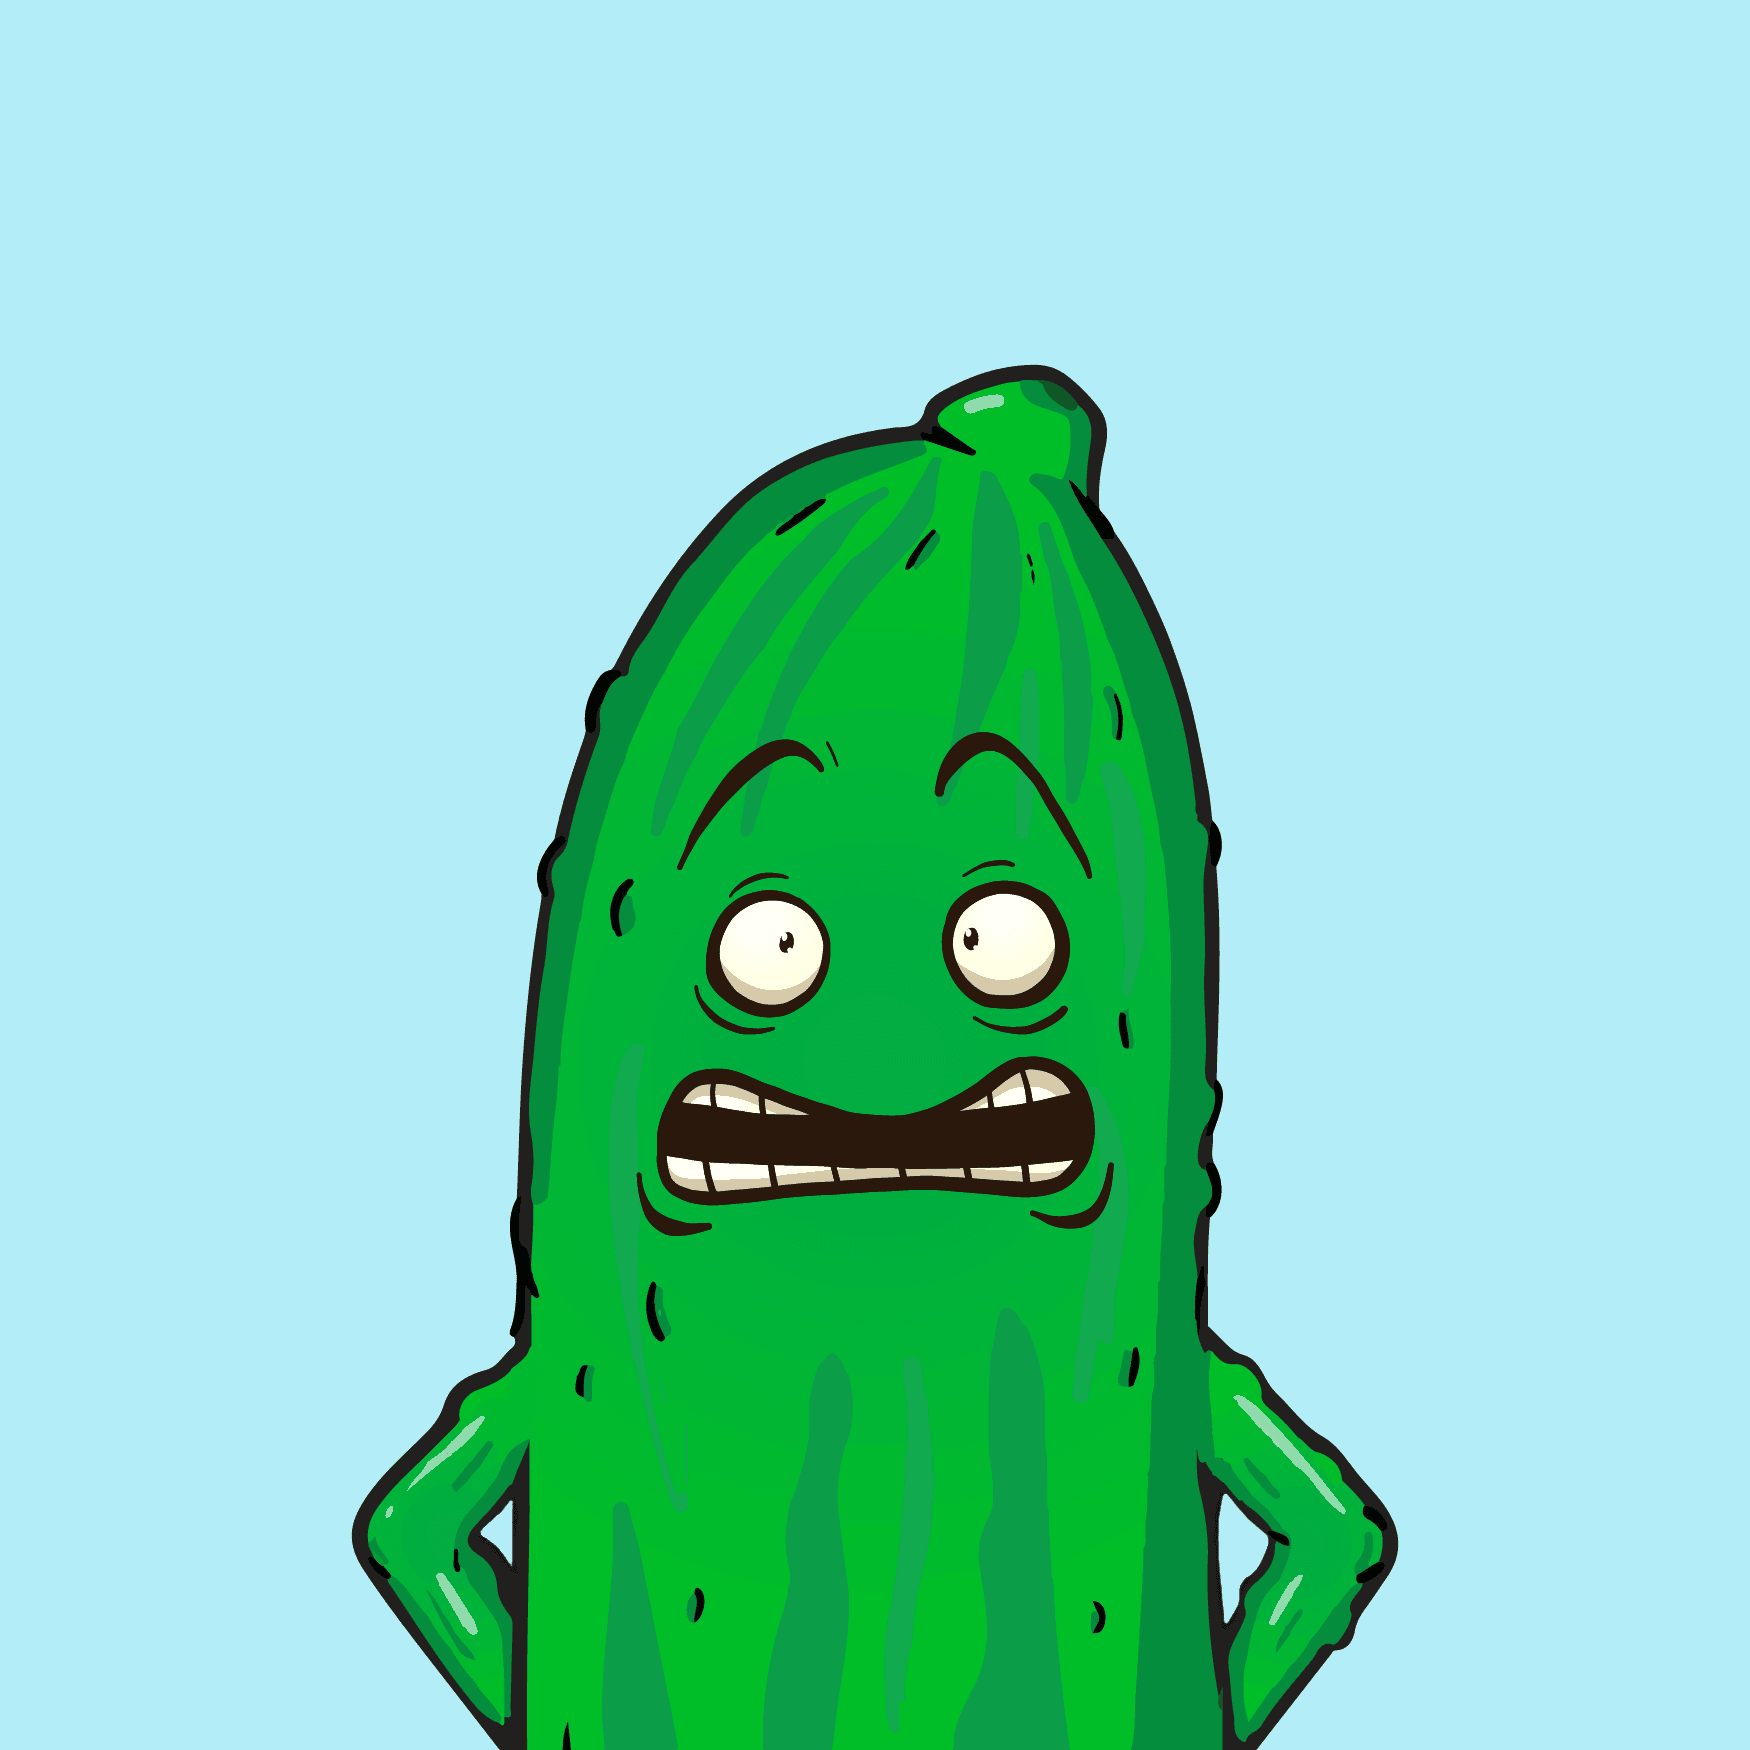 Master cucumber #16